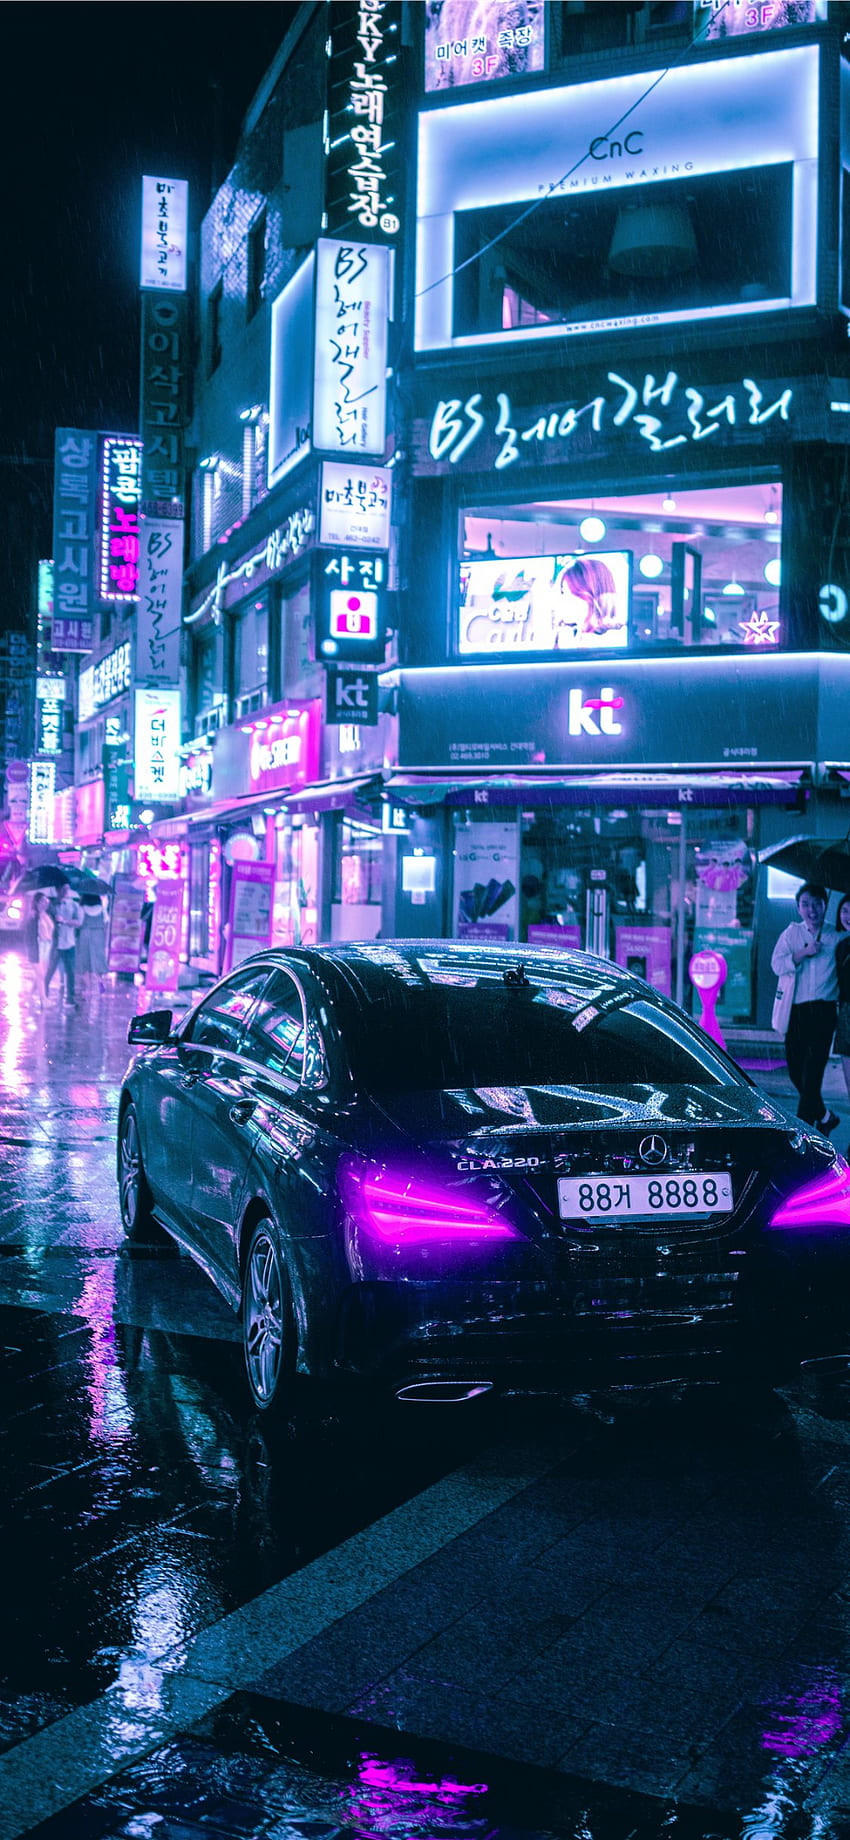 Khám phá hình ảnh tuyệt đẹp của Seoul Cyberpunk, nơi đêm trở nên sáng tạo và phóng tầm tưởng của con người bay xa tới tương lai đầy hứa hẹn. Những tòa nhà cao tầng và đèn neon mang đến một thế giới hoàn toàn khác biệt.